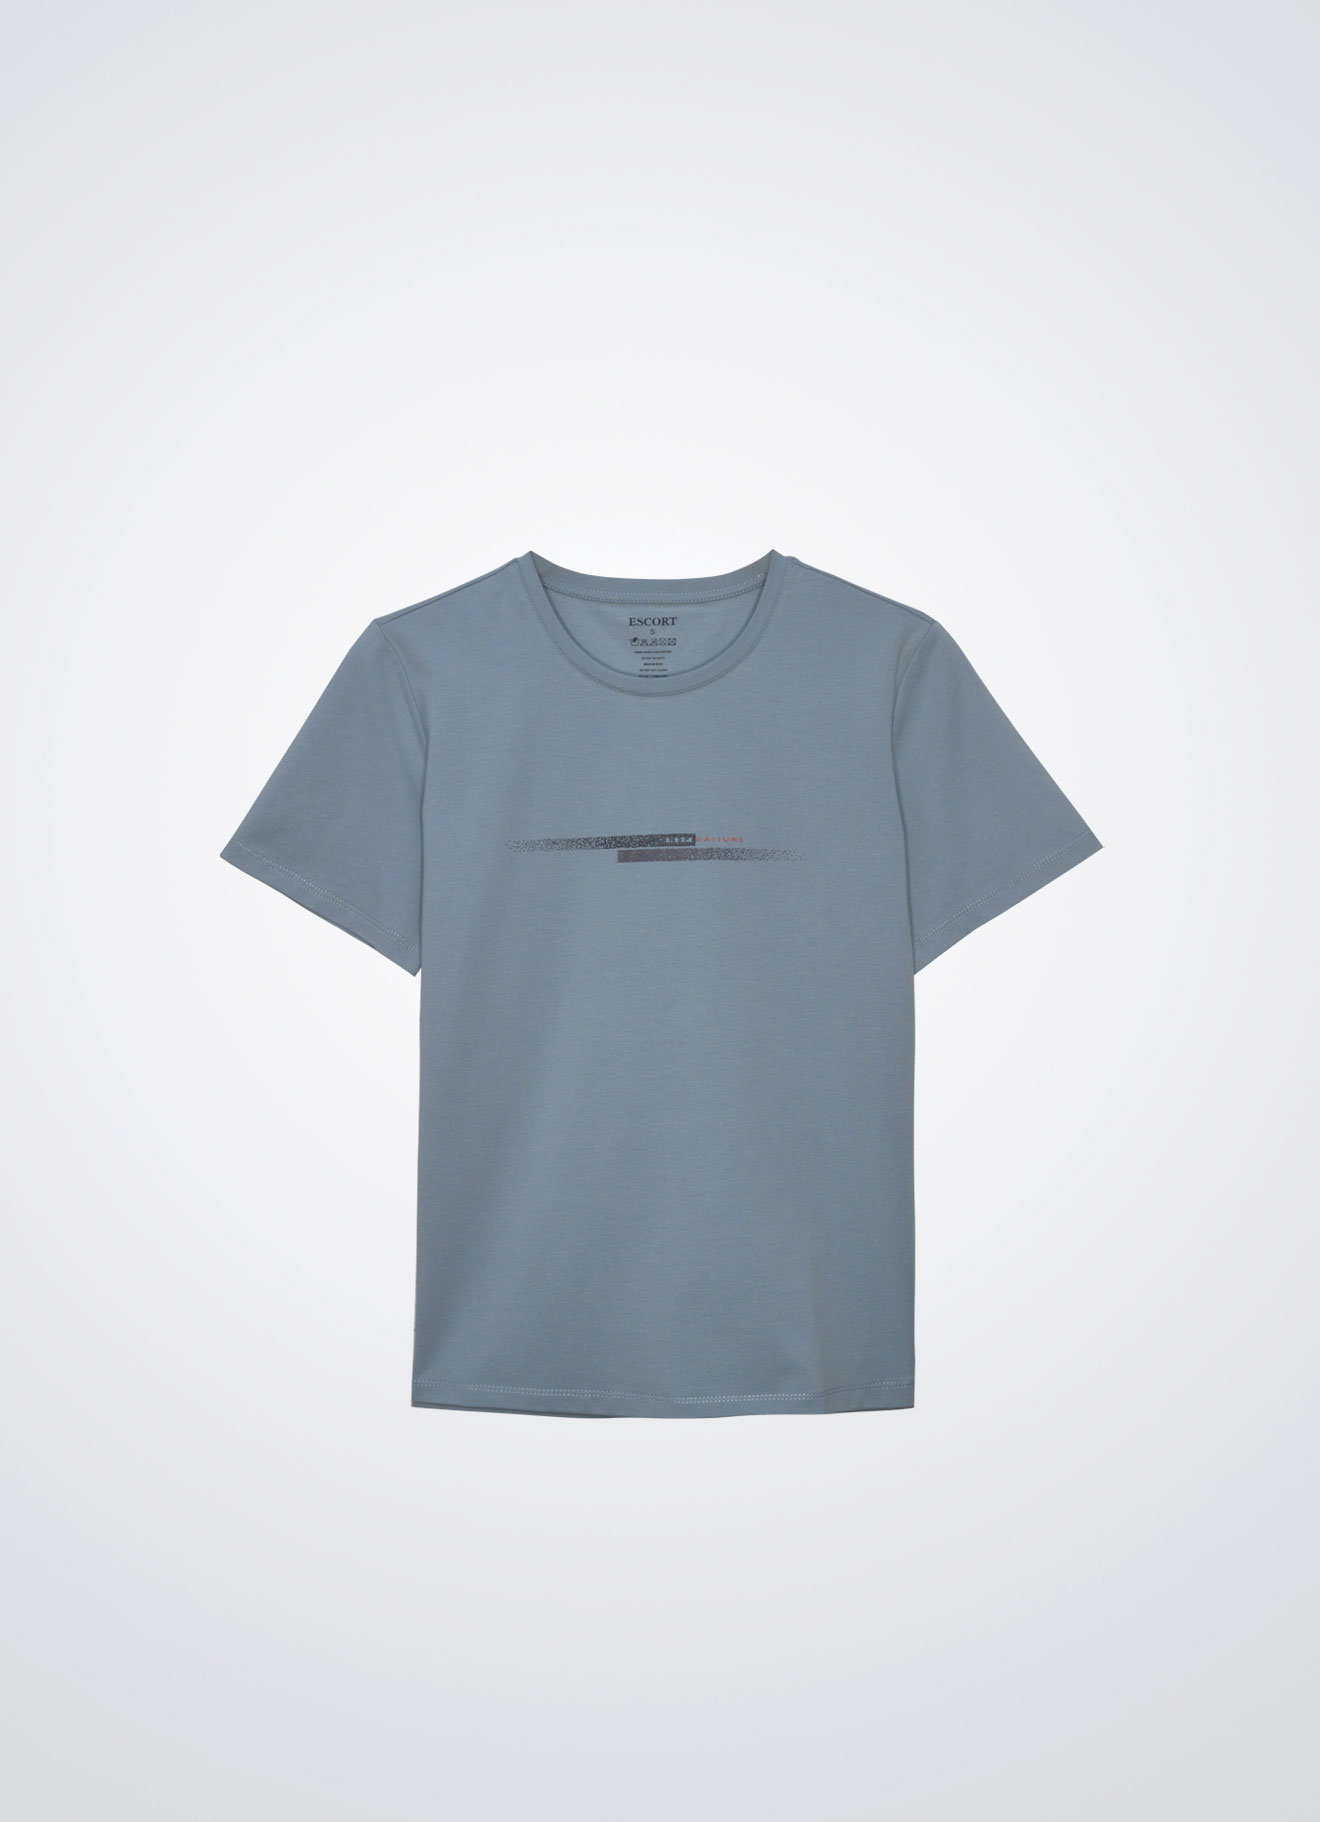 Tourmaline by Couple T-Shirt